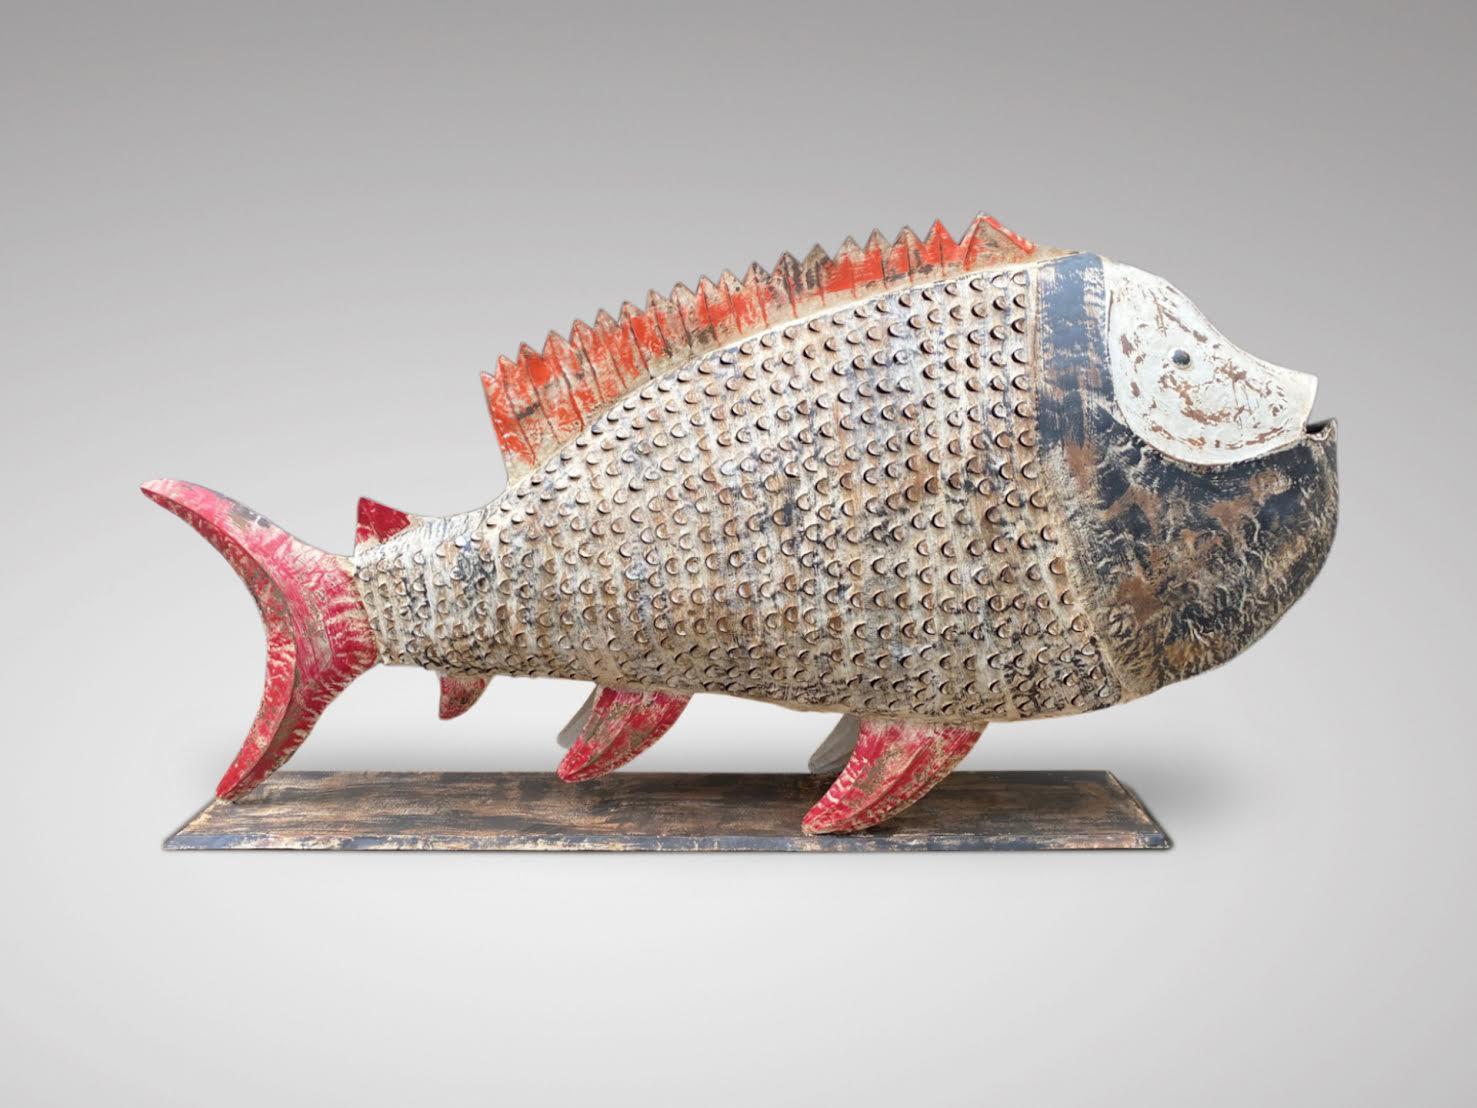 Un grand poisson très décoratif en métal peint de couleur avec chandelier. Ce magnifique poisson fabriqué par un ferronnier de Jodhpur est peint et patiné à la main. Merveilleux objet de décoration, il vous permettra de décorer votre jardin ou même